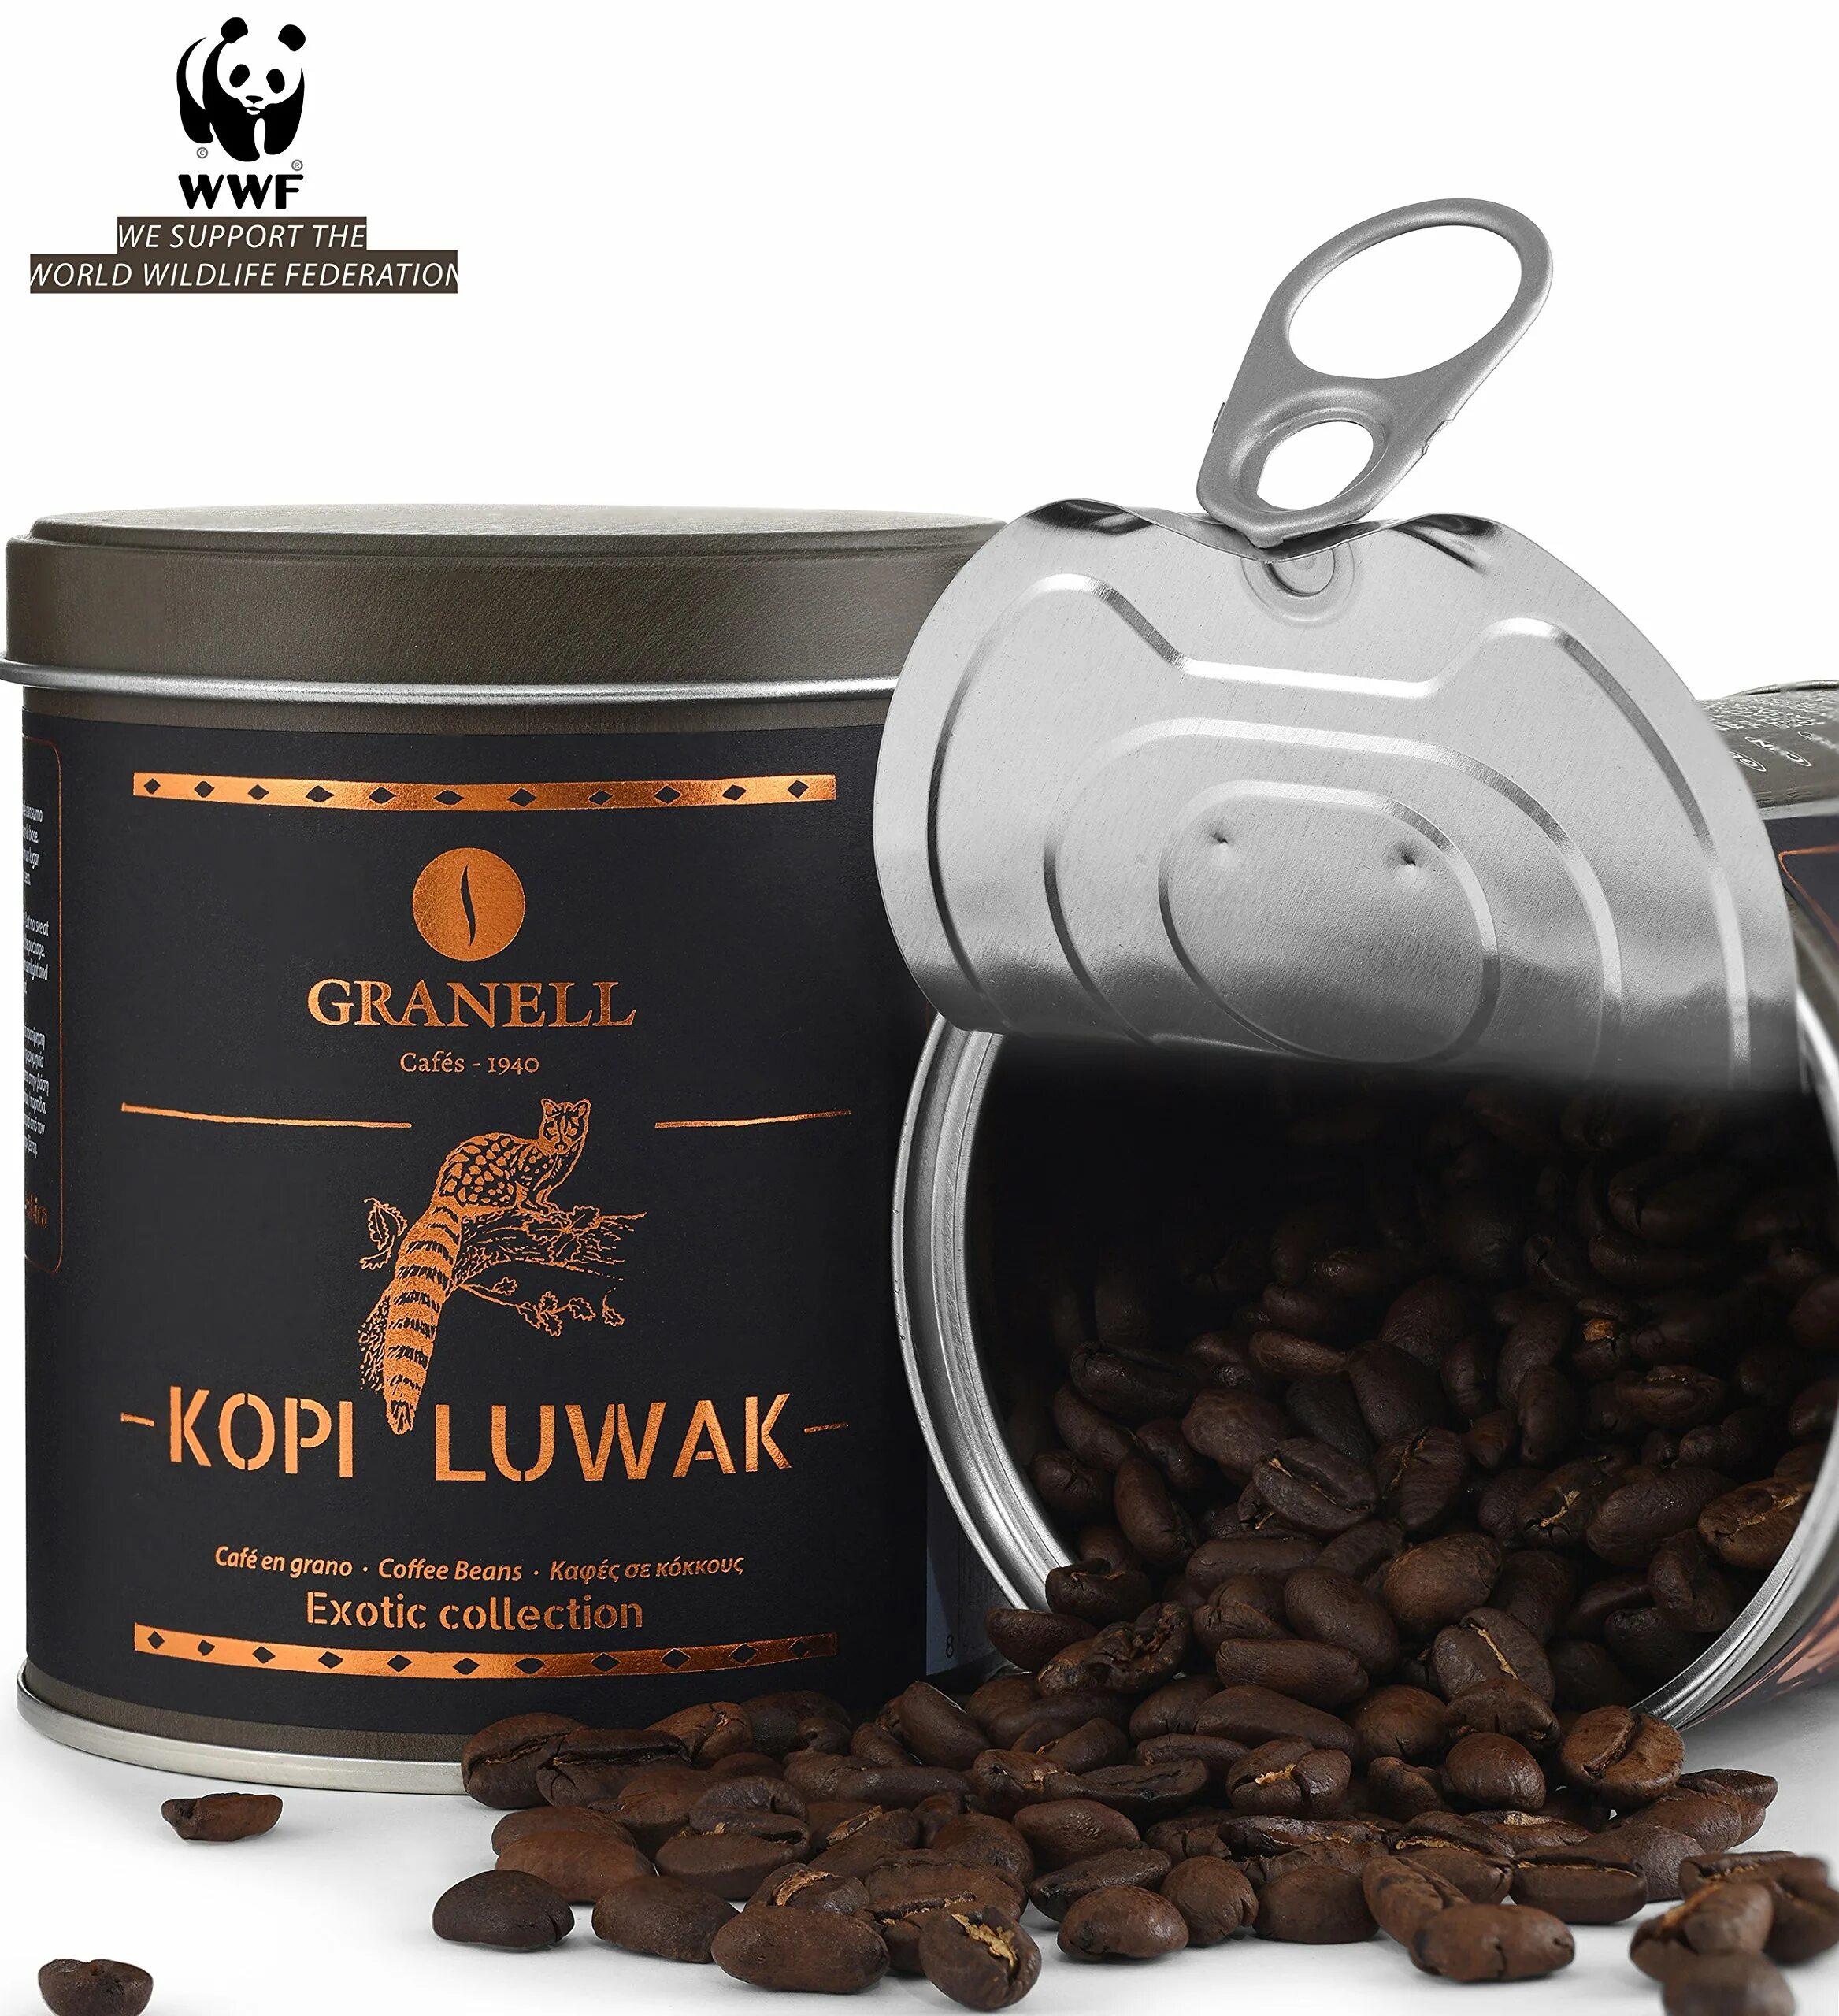 Купить кофе россия. Сорт кофе копи Лювак. Kopi Luwak вилд кофе. Самый дорогой кофе kopi Luwak. Кофе Granell kopi Luwak.